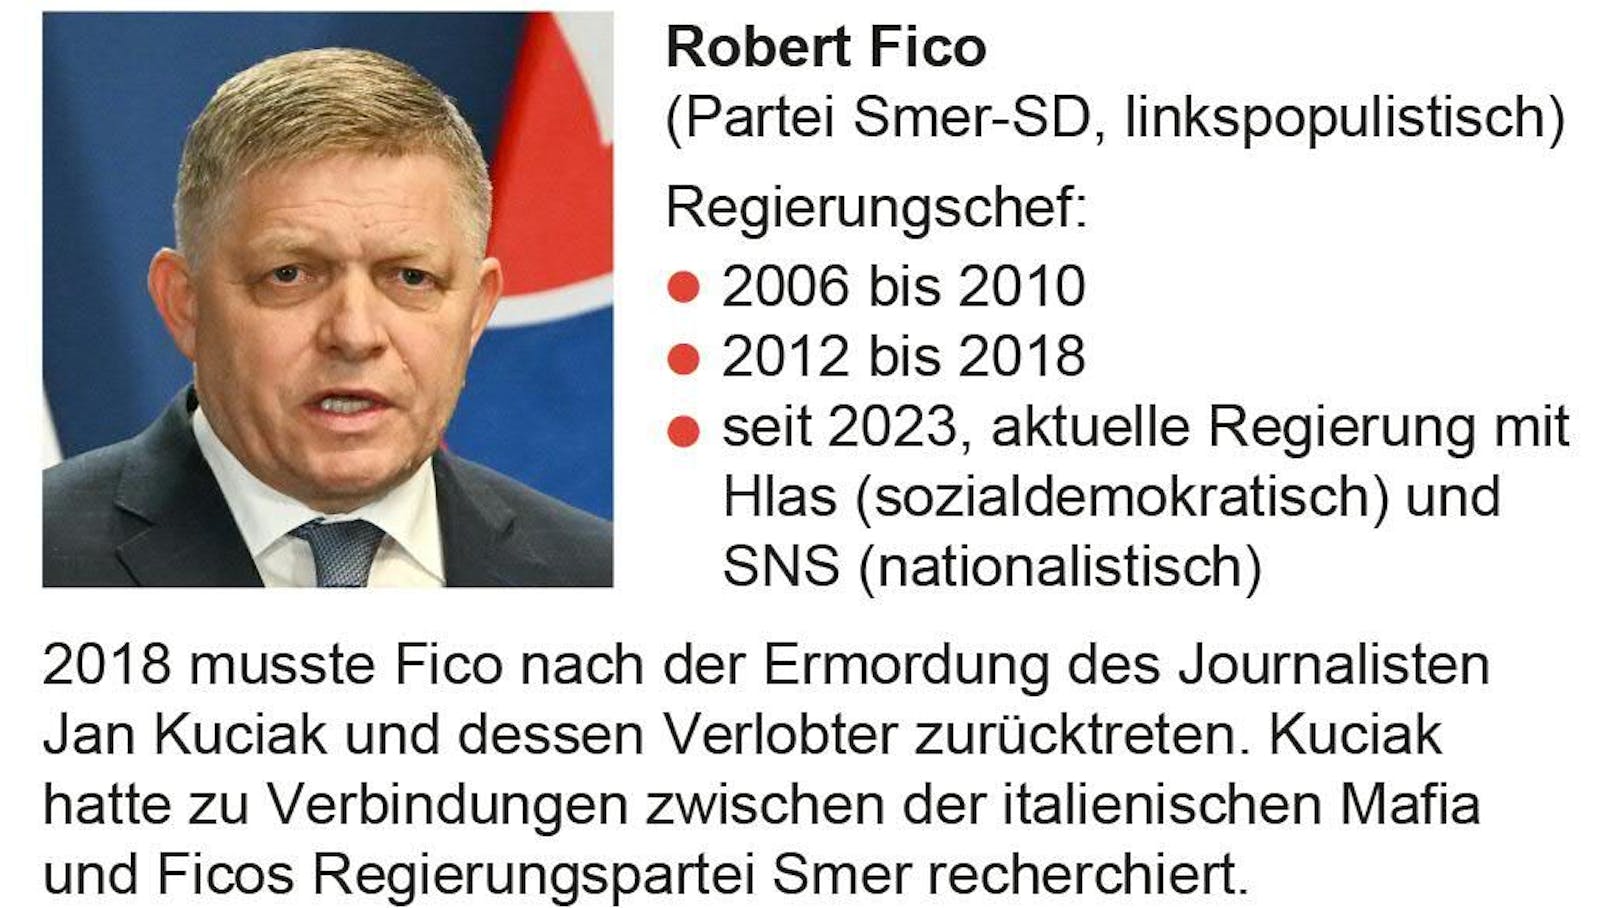 Das wichtigste zum slowakischen Premier Fico